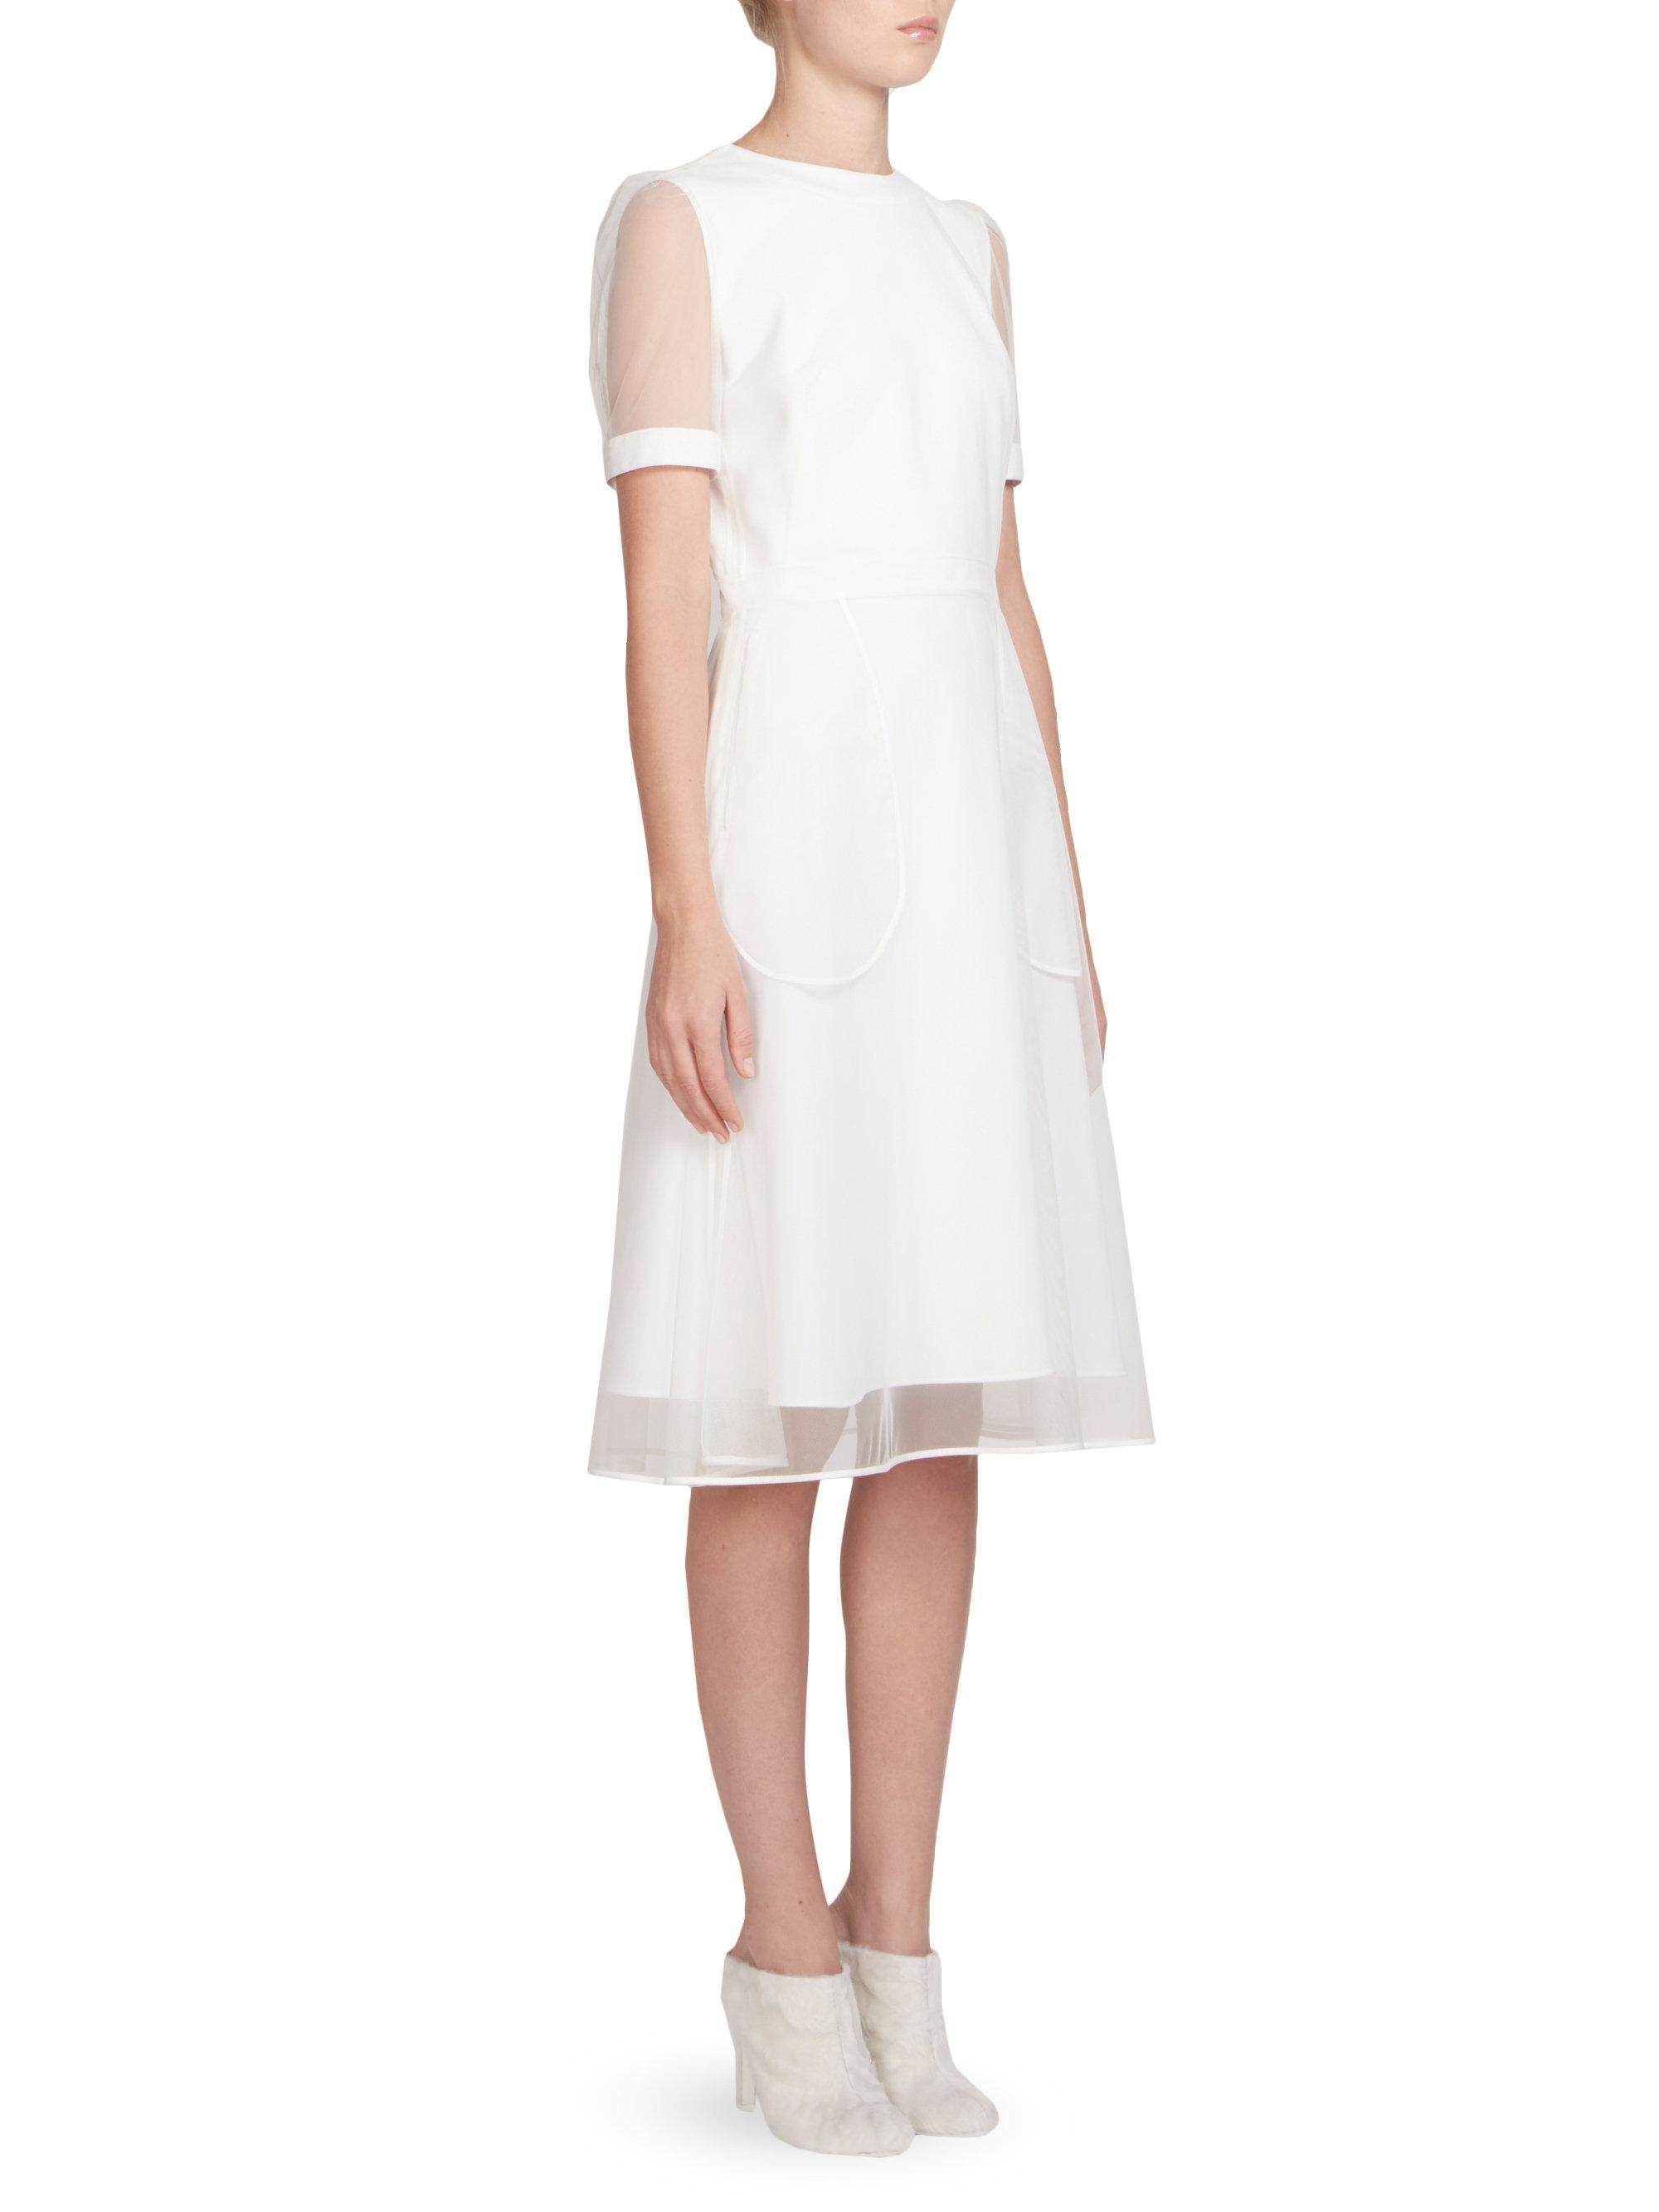 White Sheer Dress Overlay